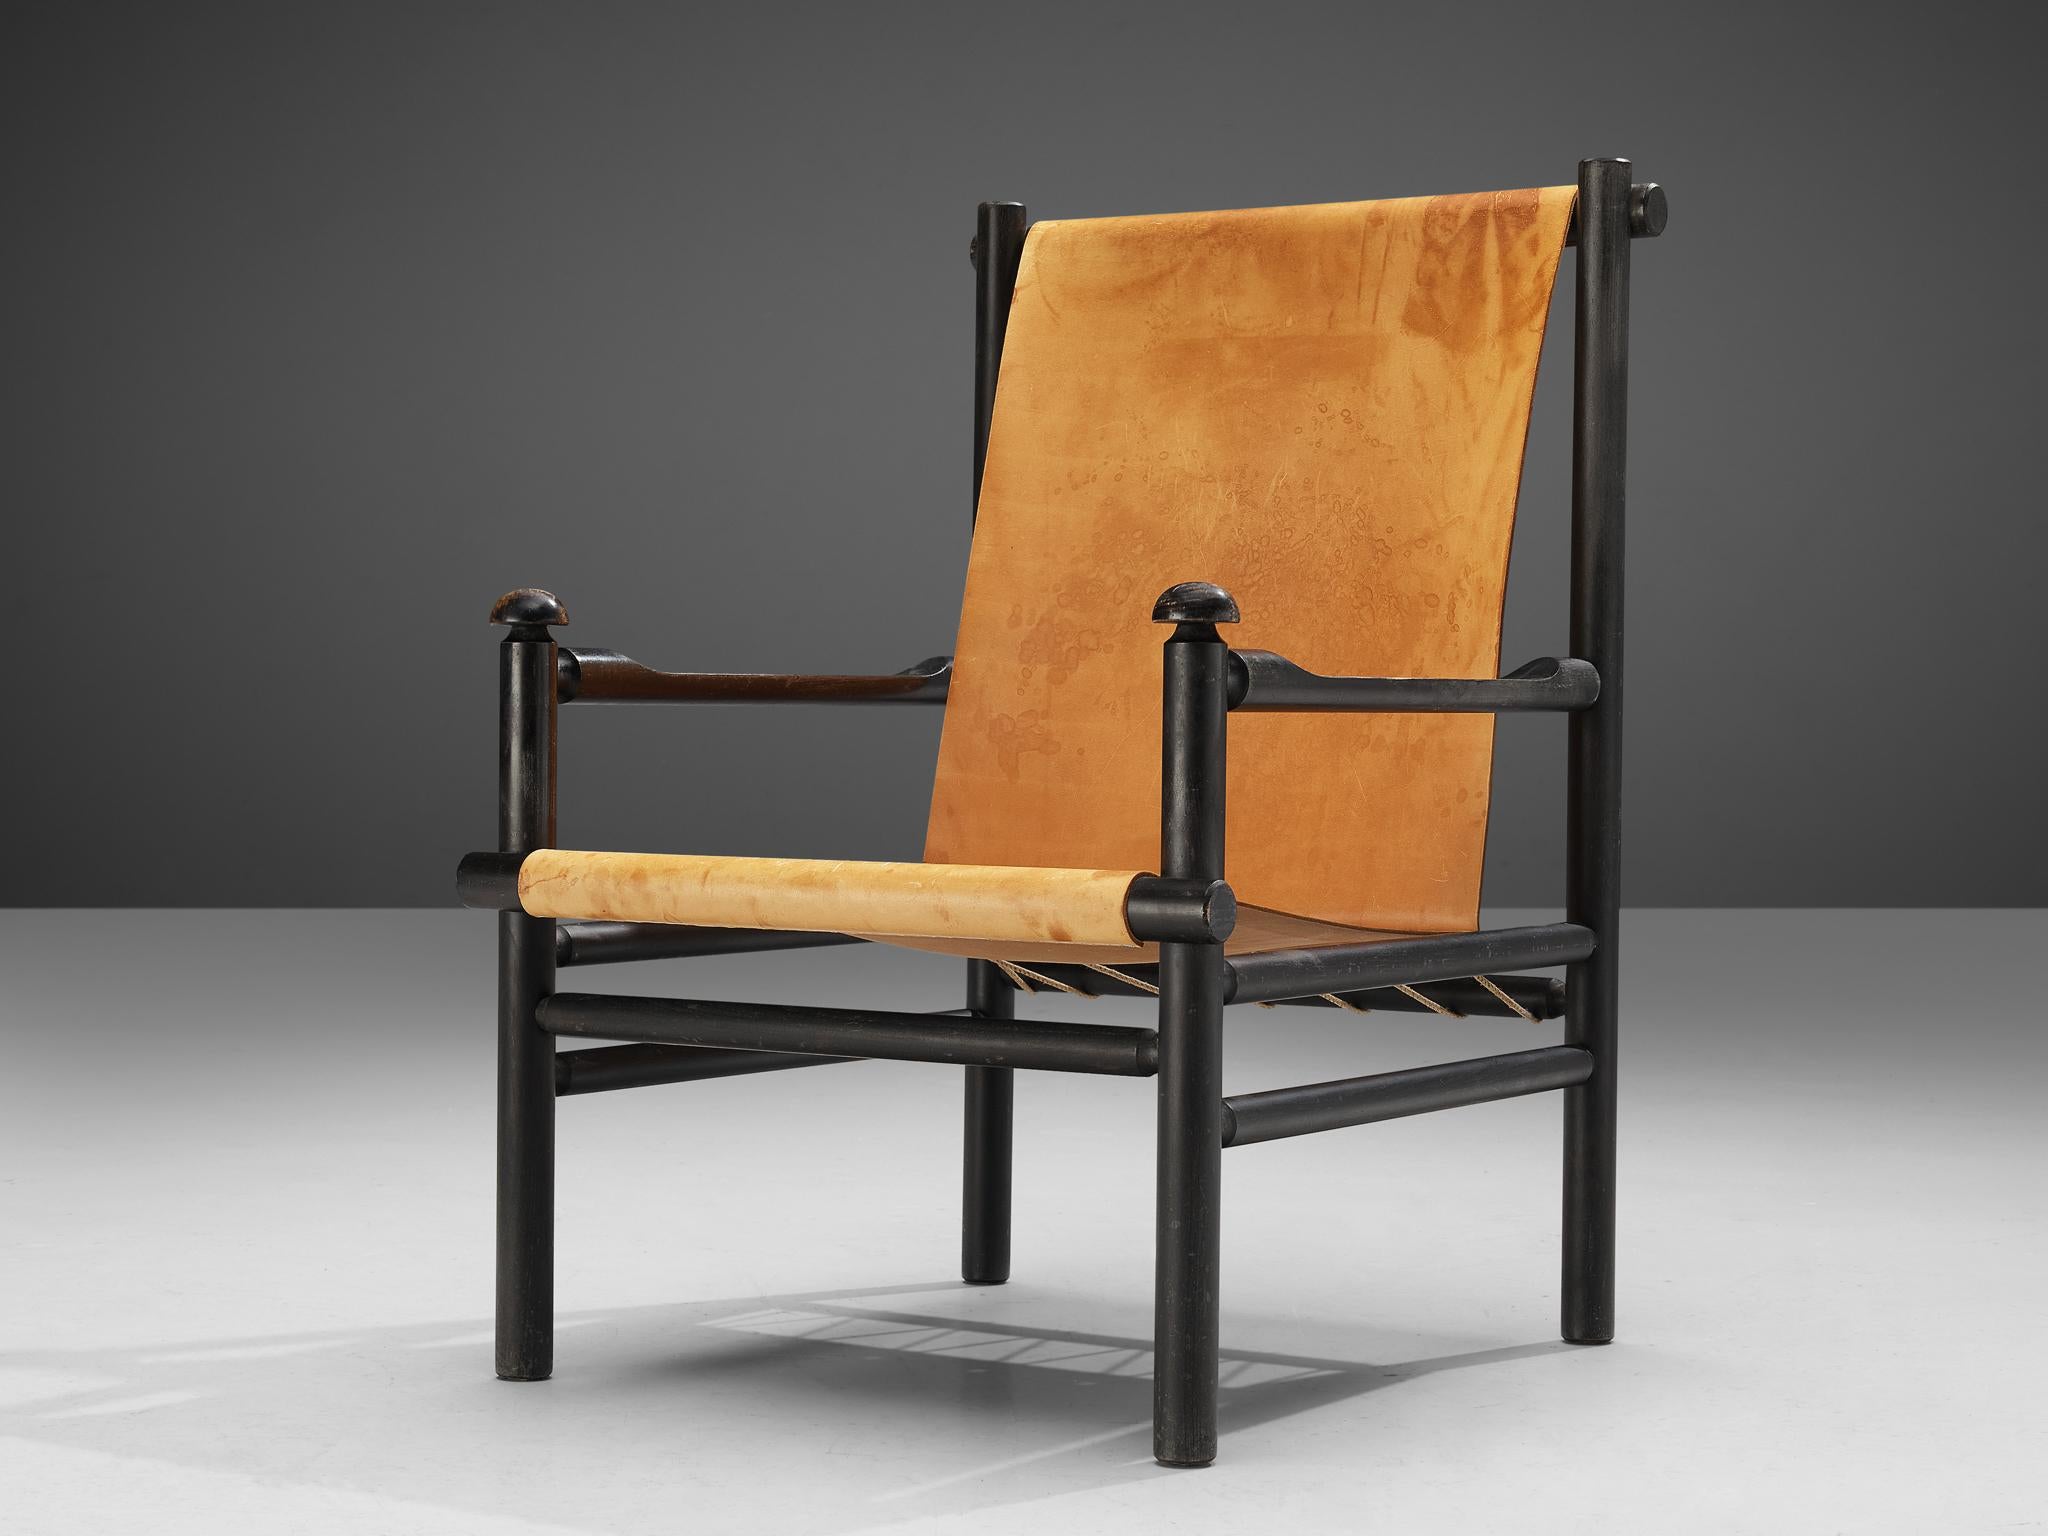 Fauteuil, cuir, bois laqué, corde, Italie, années 1950

Cette chaise italienne incarne un cadre solide et anguleux, tout en offrant une sensation d'espace grâce à son design ouvert et à son assise en cuir de couleur chaude. Les articulations